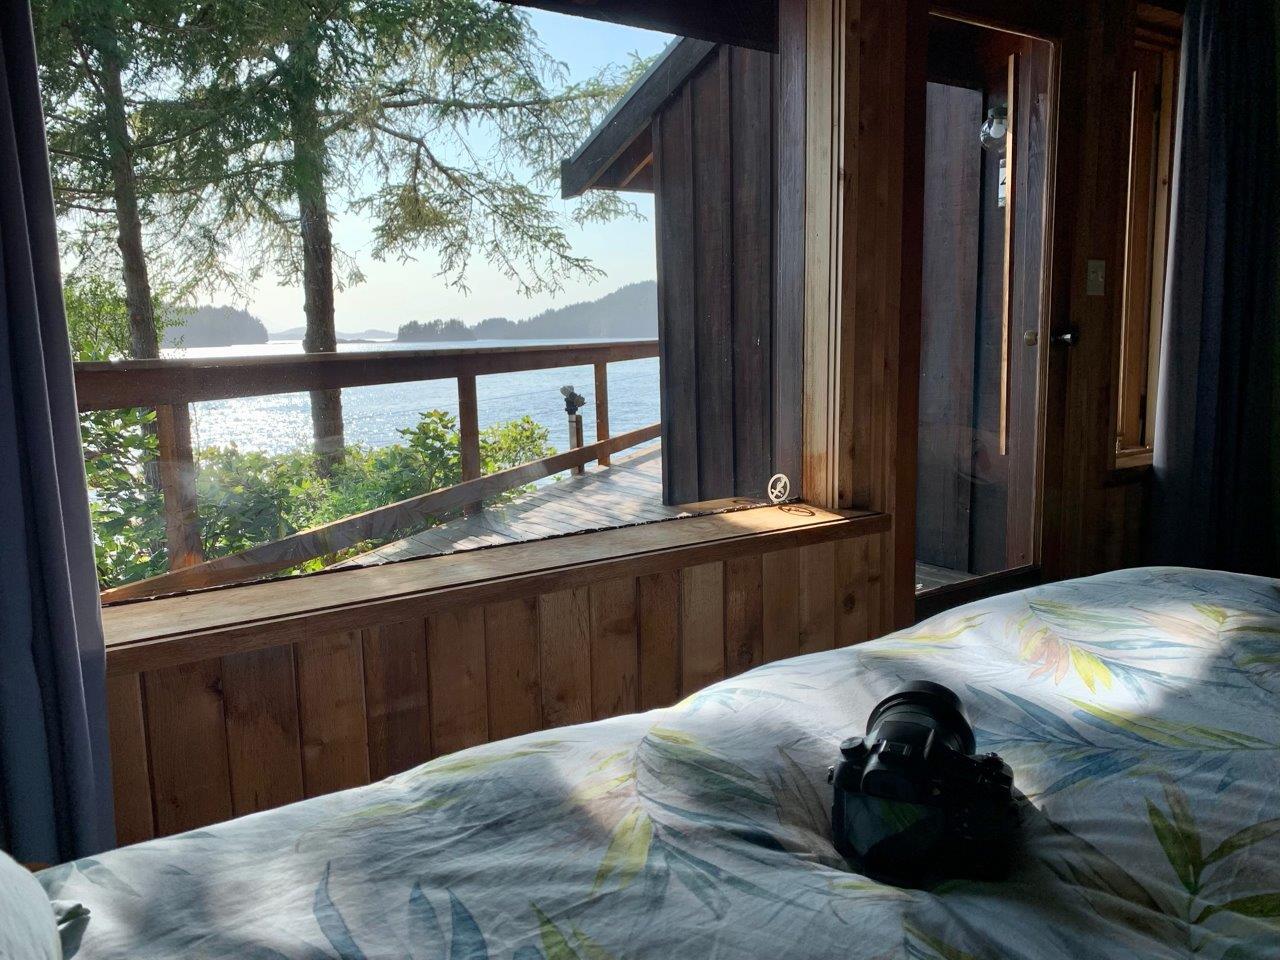 편안한 침대에서의 아름다운 전망 - 사진 캐롤 패터슨